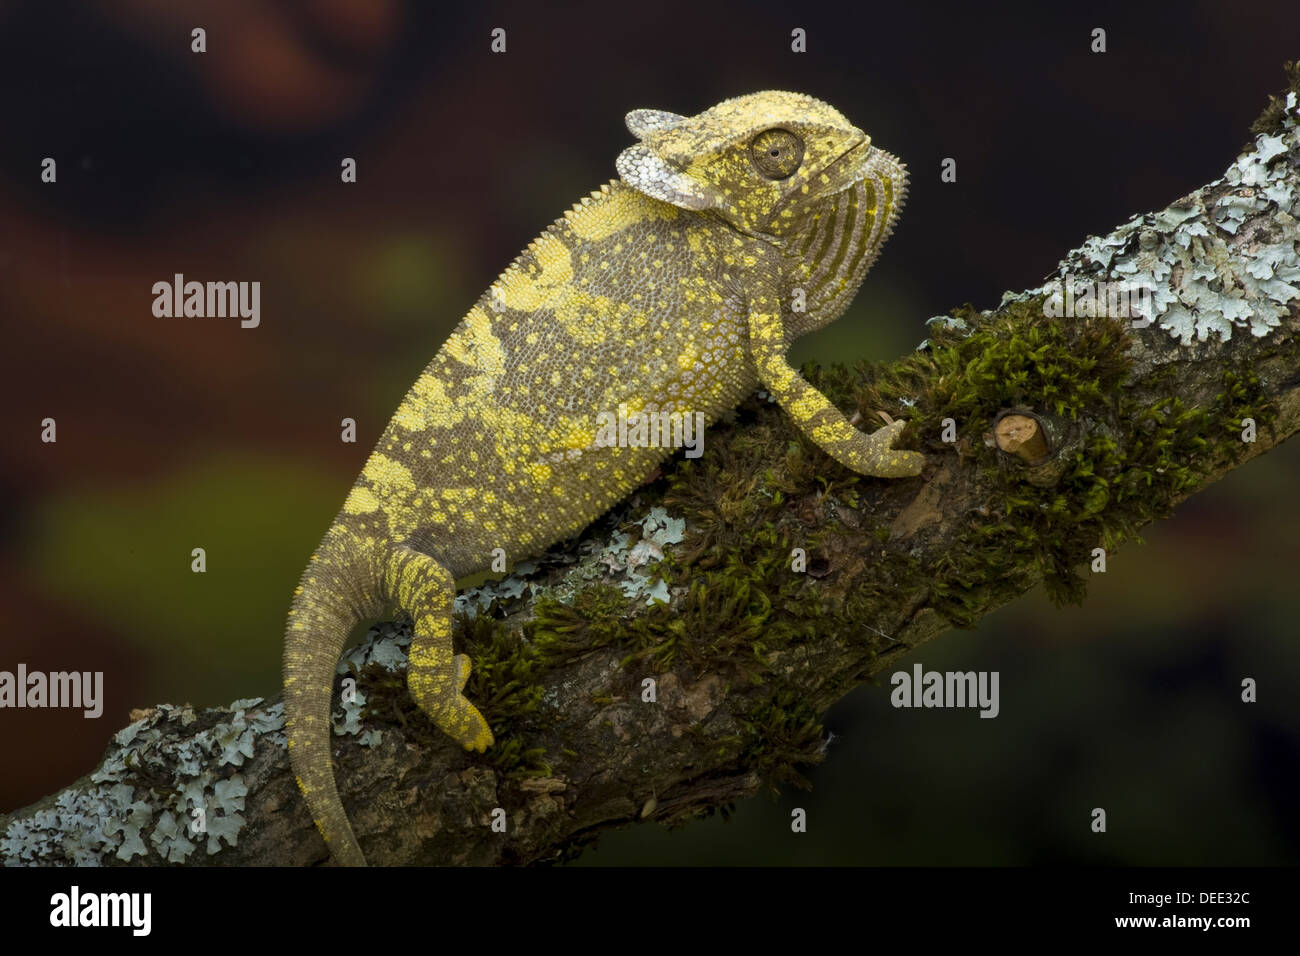 Flap-necked chameleon, Chamaeleo dilepis Stock Photo